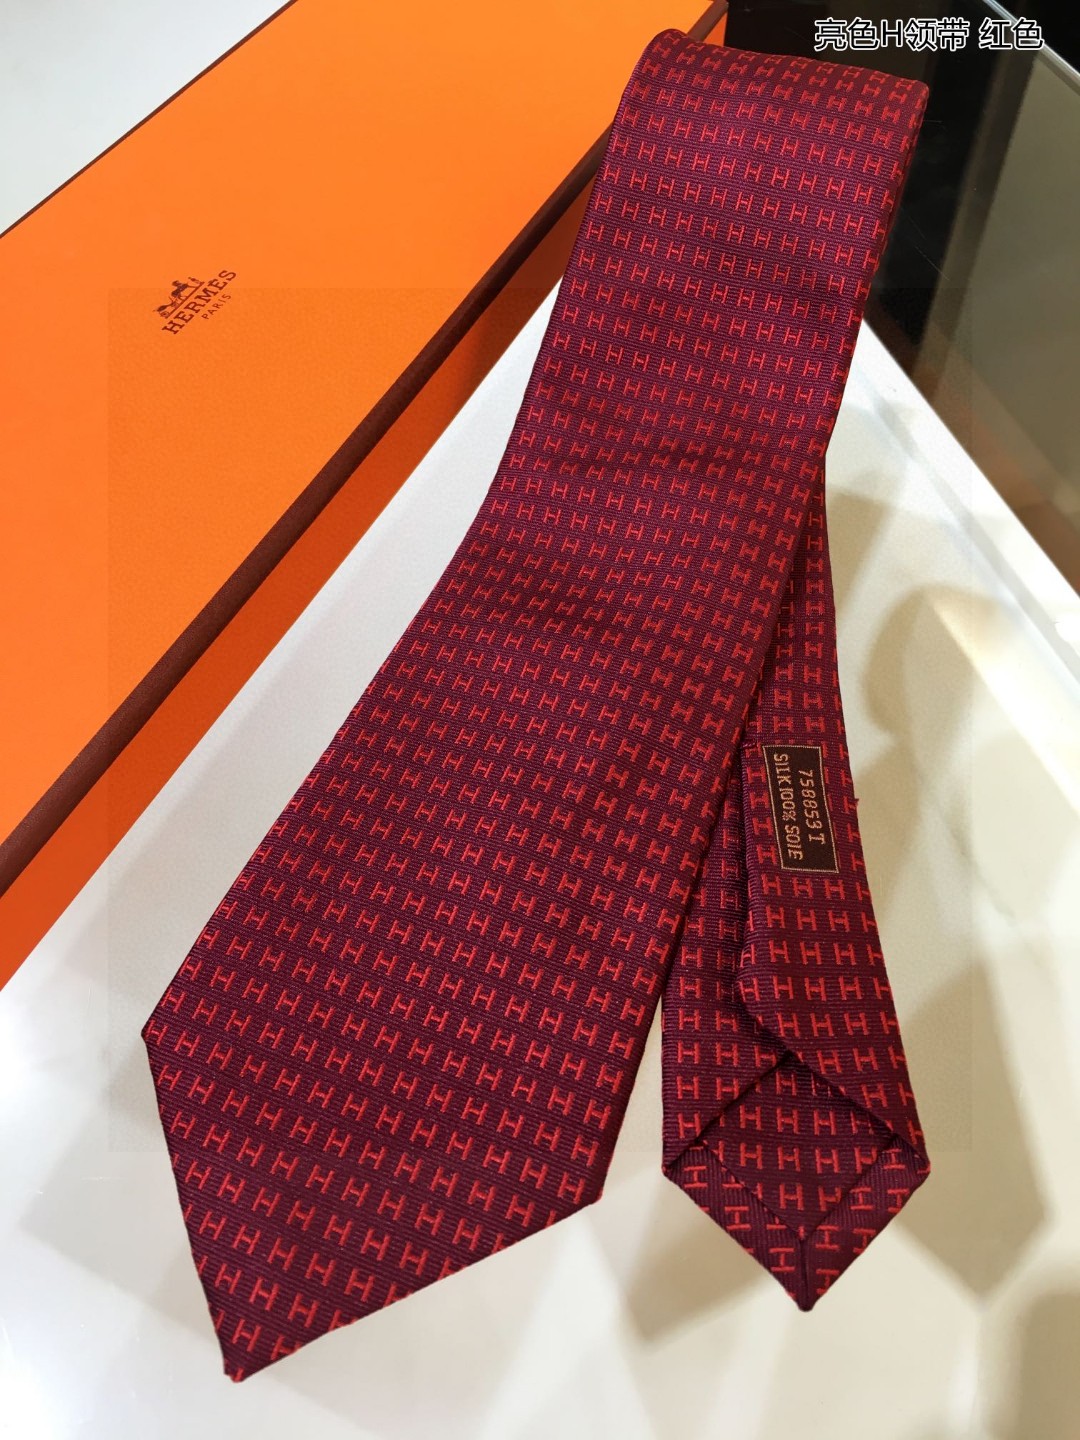 上新男士新款领带系列亮色H领带稀有H